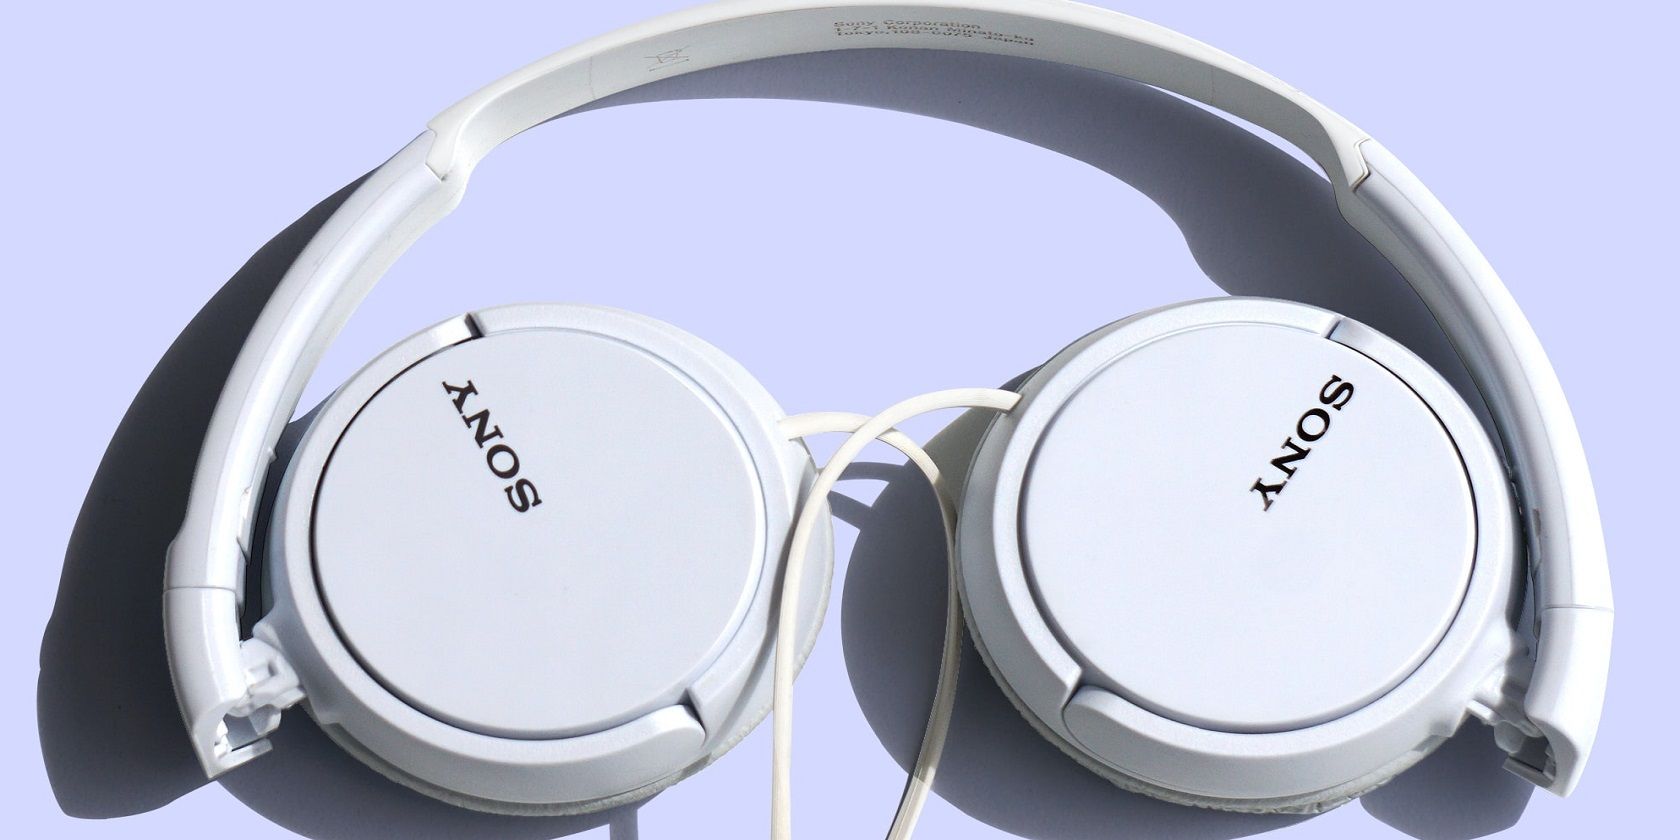 7 Best Wireless Headphones